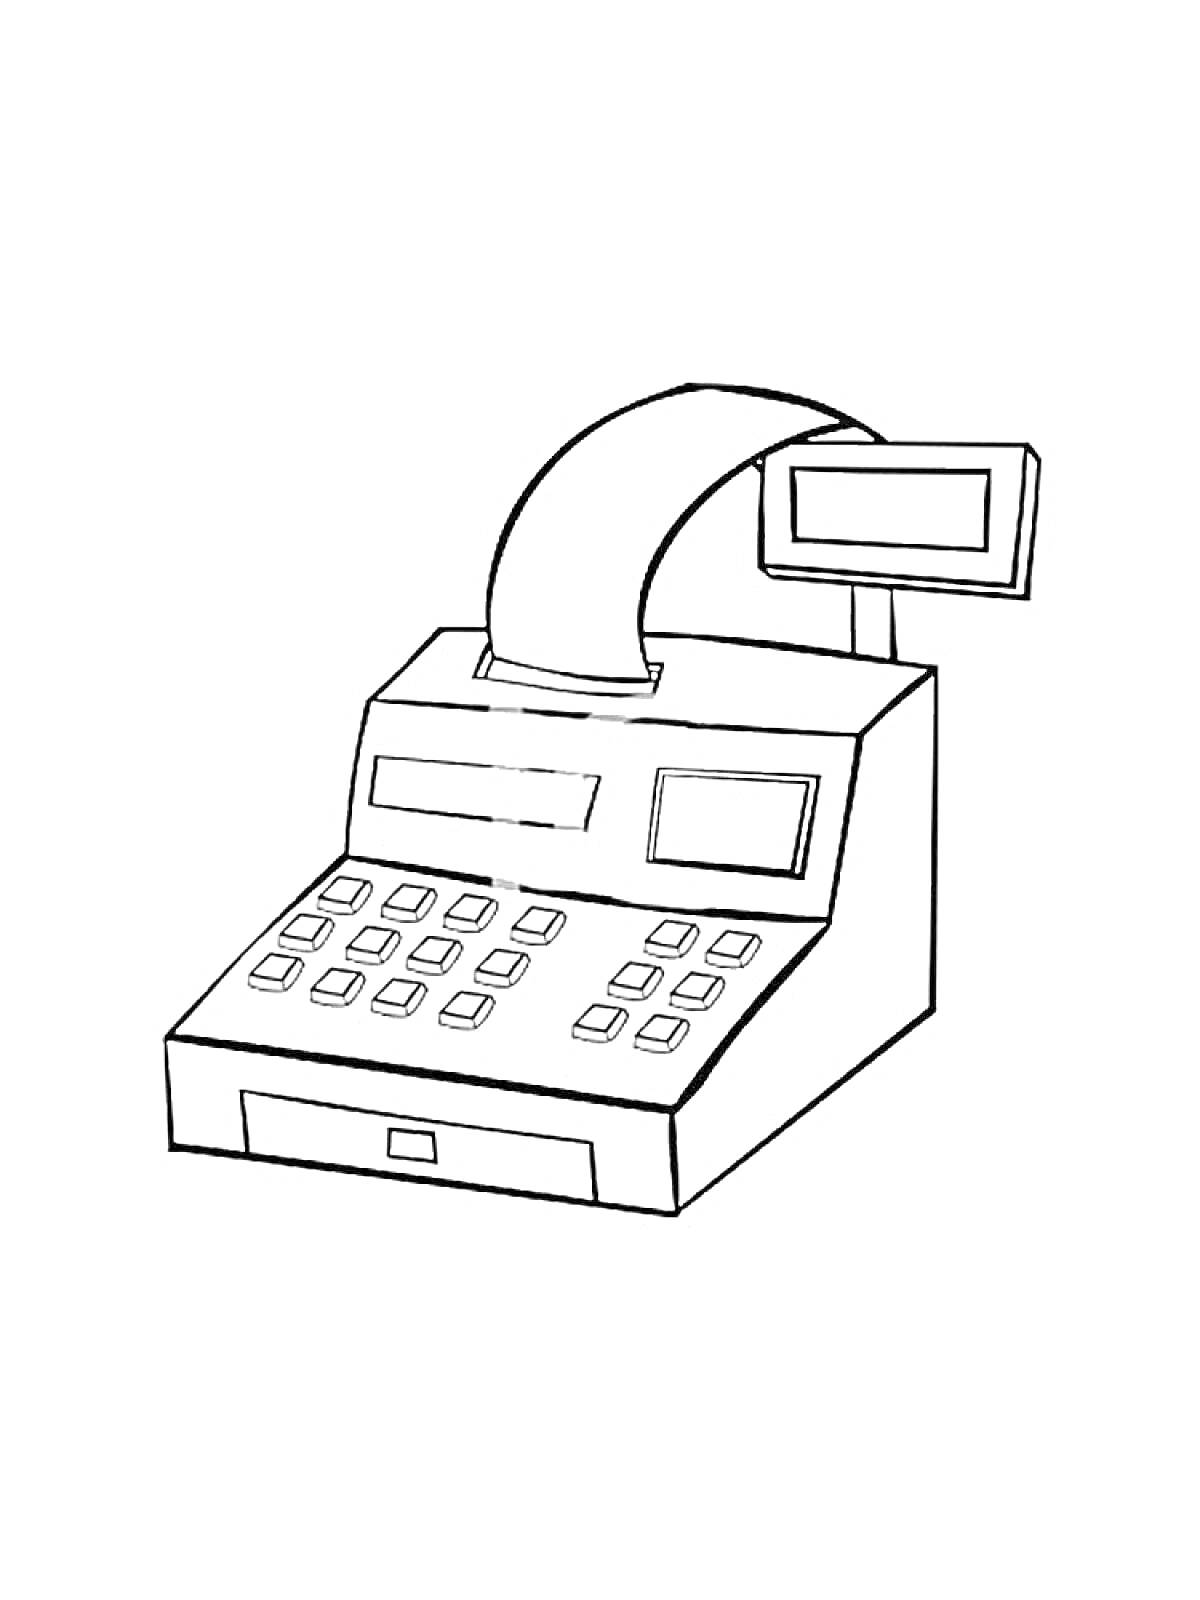 Кассовый аппарат с дисплеем, клавиатурой и рулоном бумаги